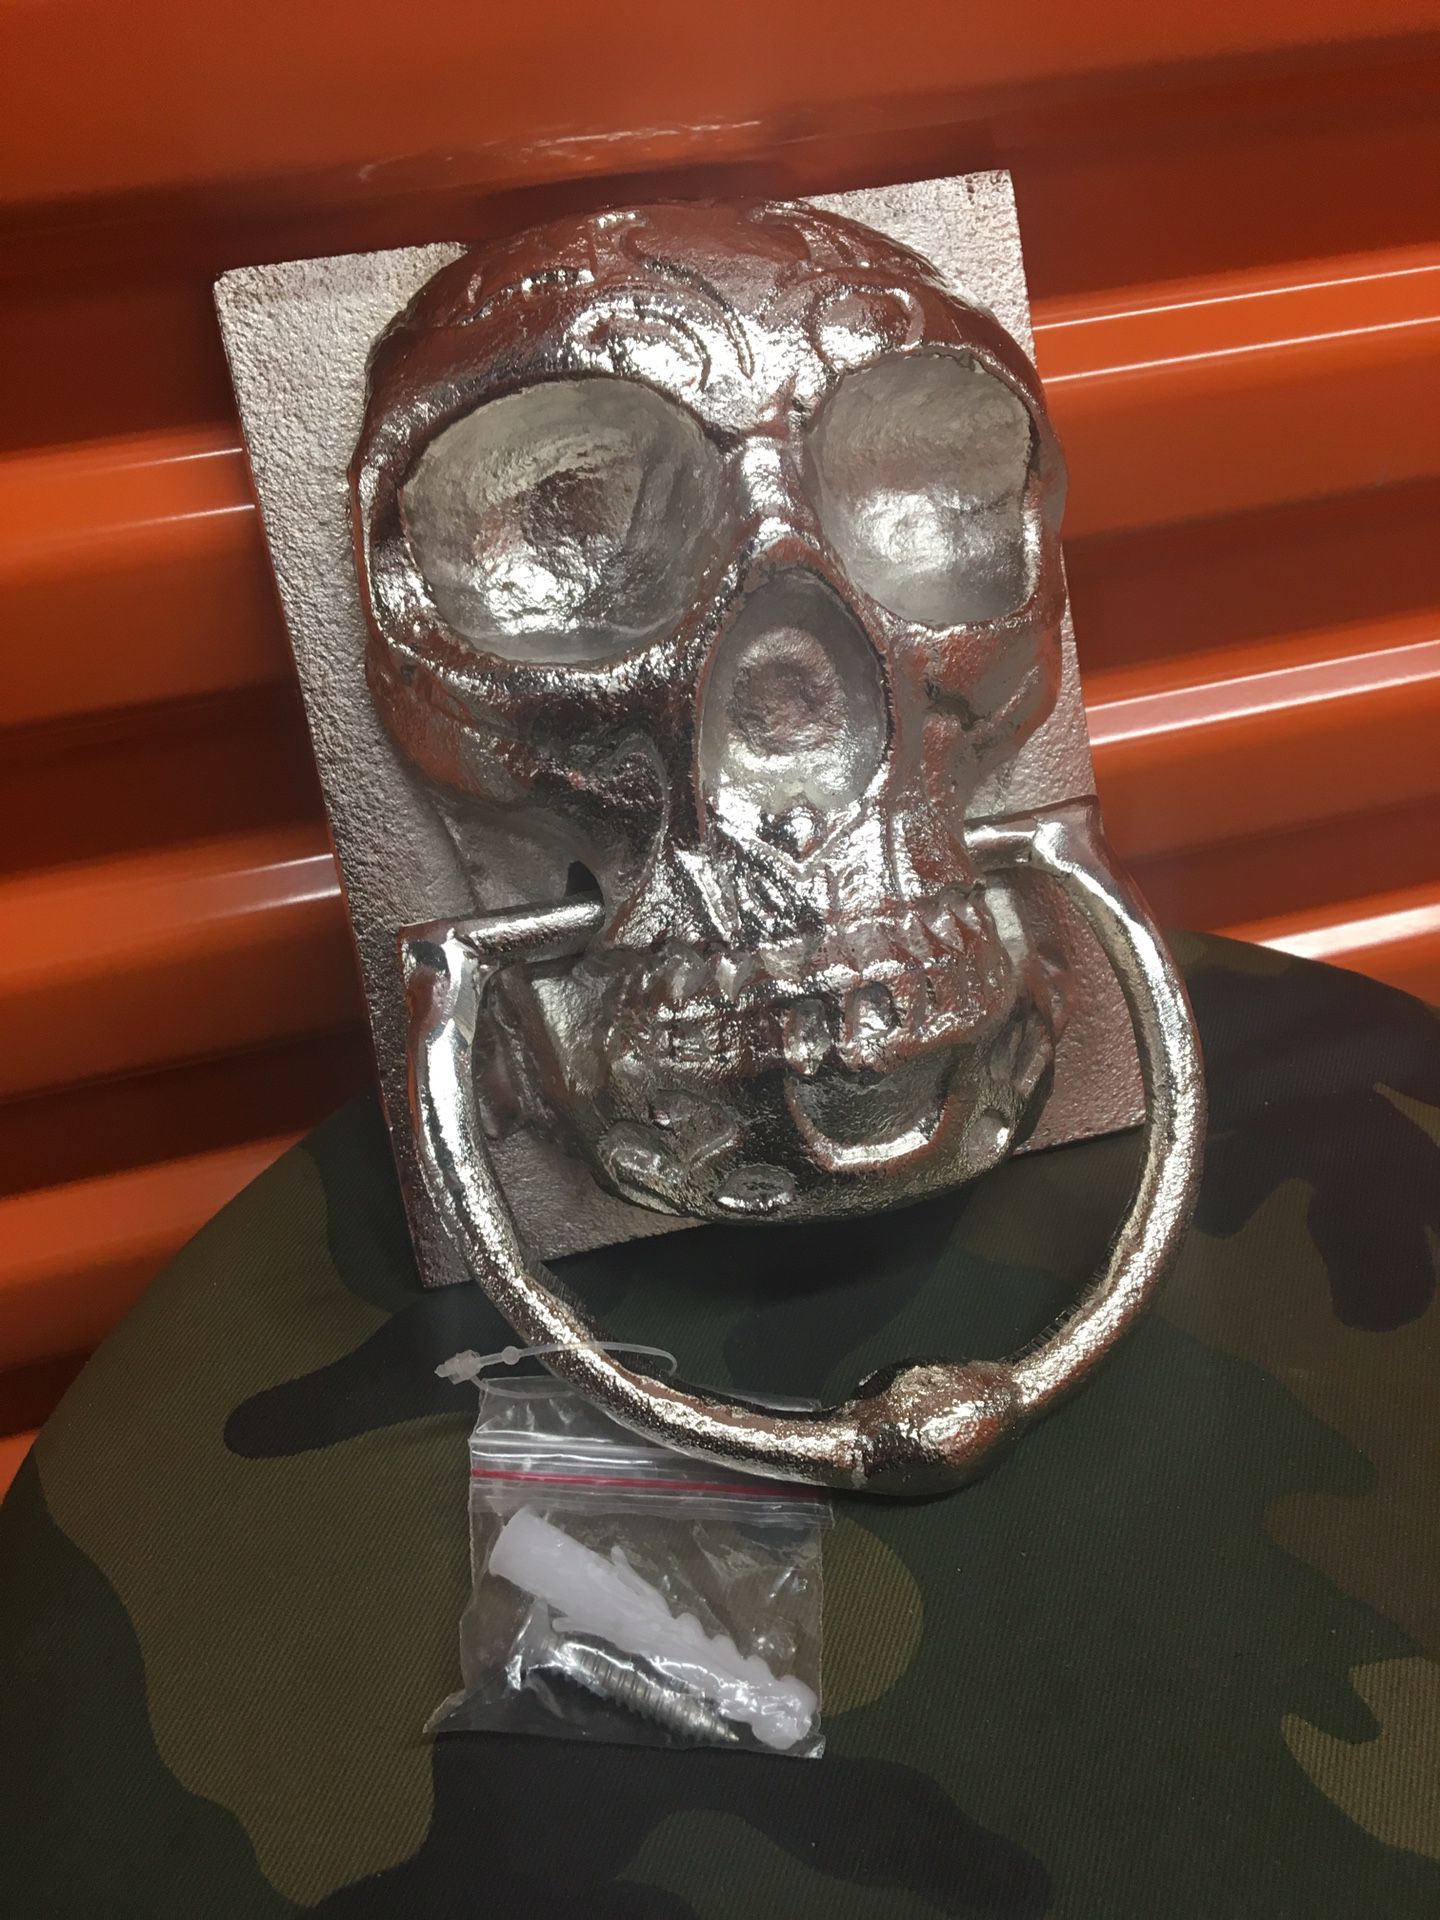 9” ‘Metal Skull Head’ Door Knocker/Towel Holder Wall Decor (Brand New)